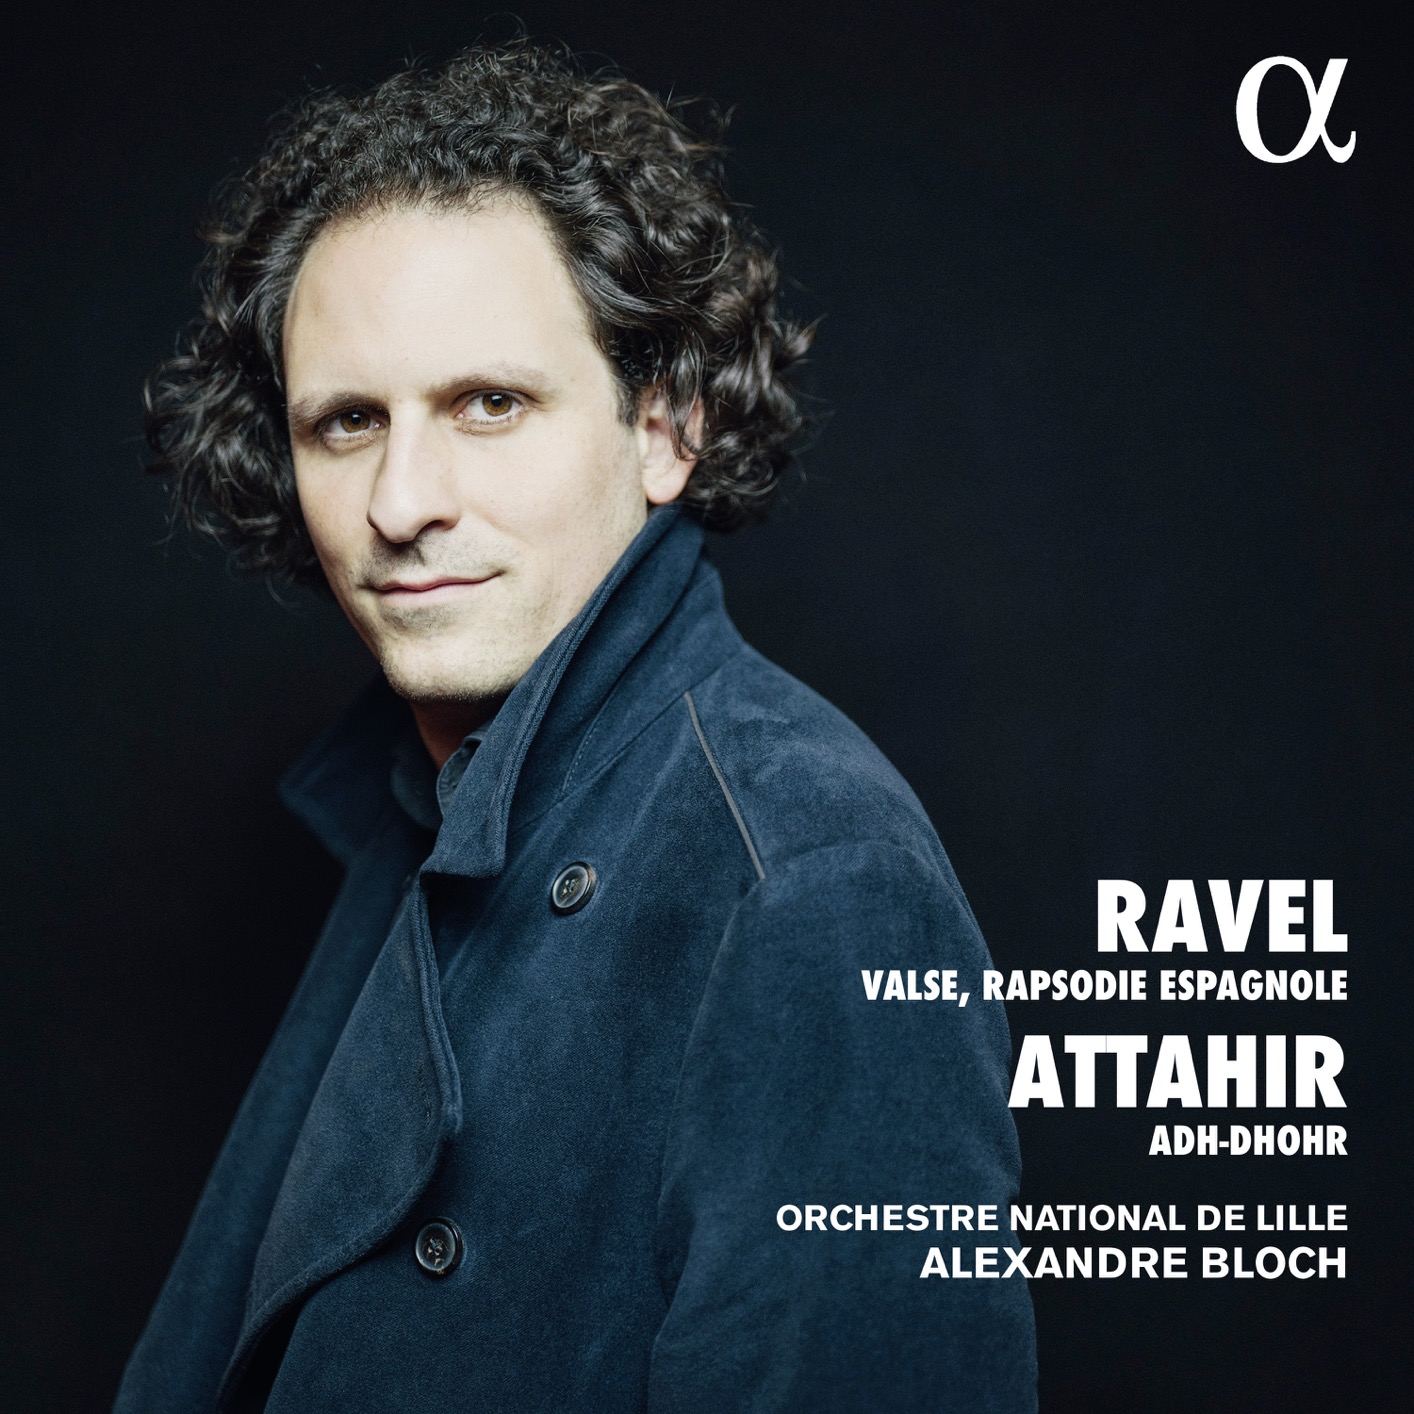 Orchestre National de Lille & Alexandre Bloch - Ravel & Attahir: Valse, Rapsodie espagnole & Adh-Dhor (2019) [FLAC 24bit/96kHz]